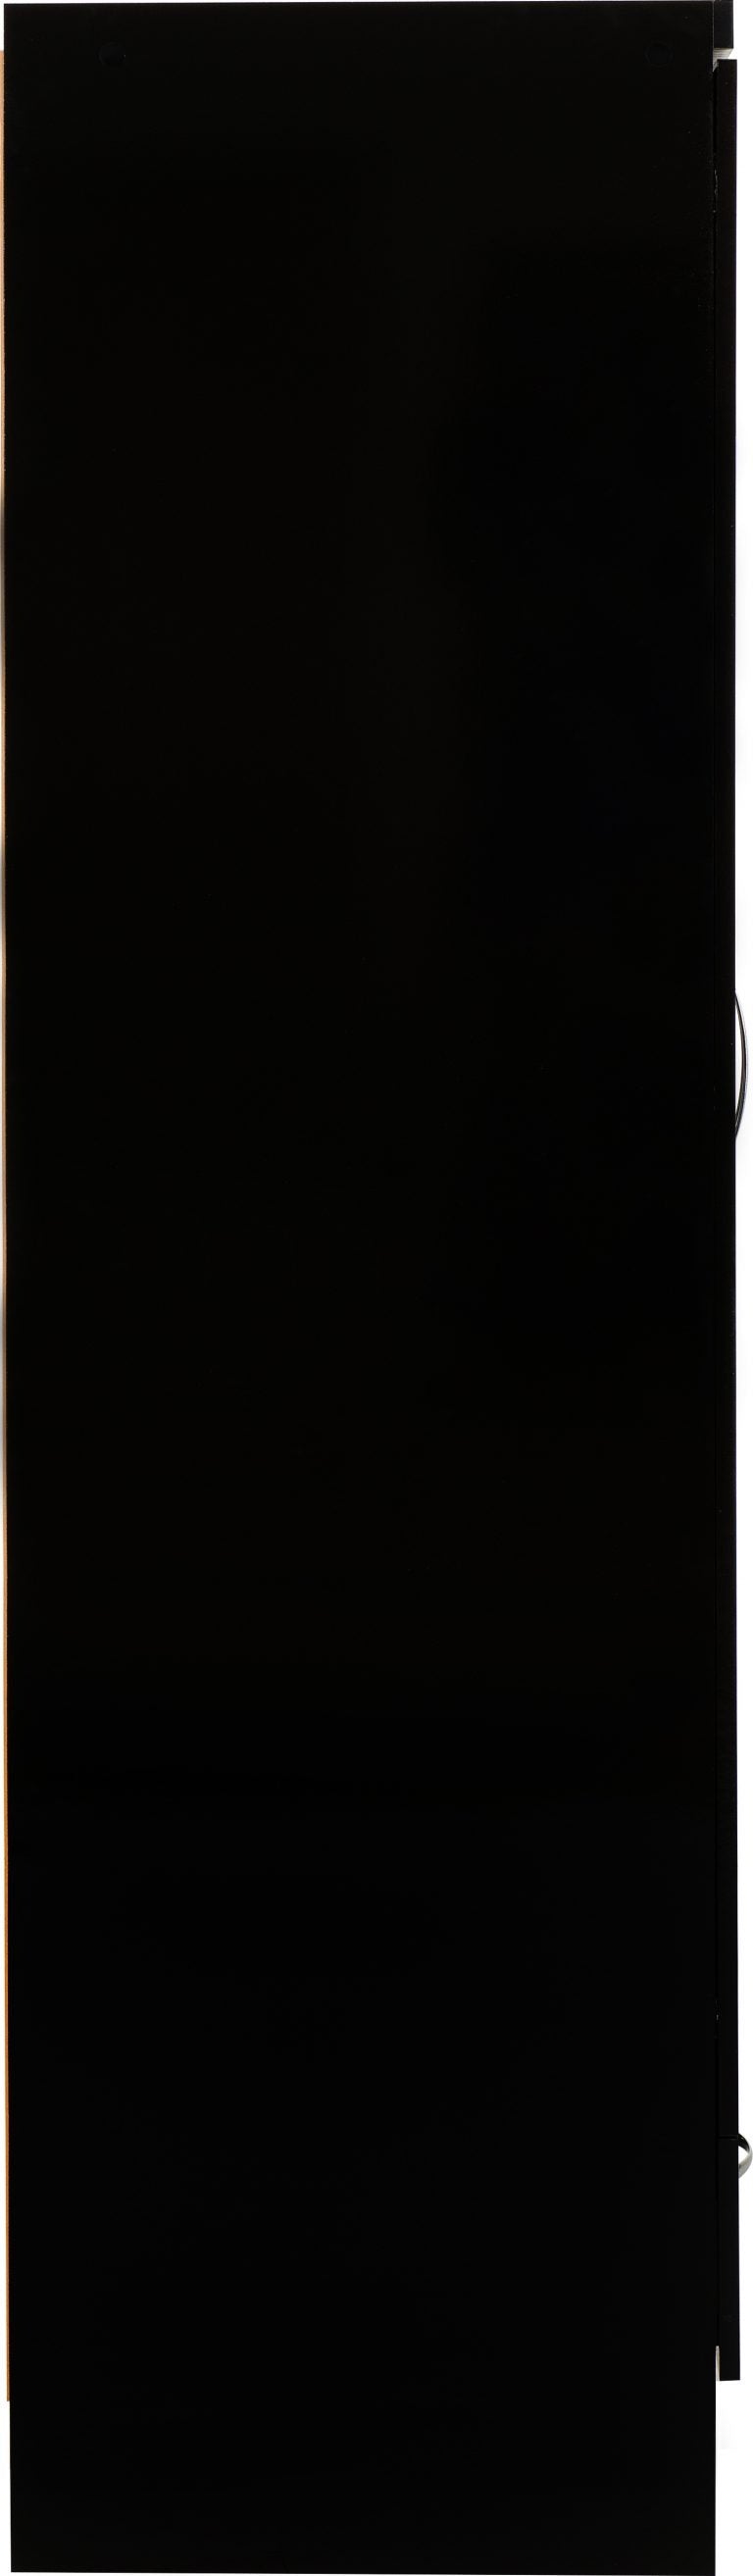 Nevada Mirrored 2 Door 1 Drawer Wardrobe - Black Gloss